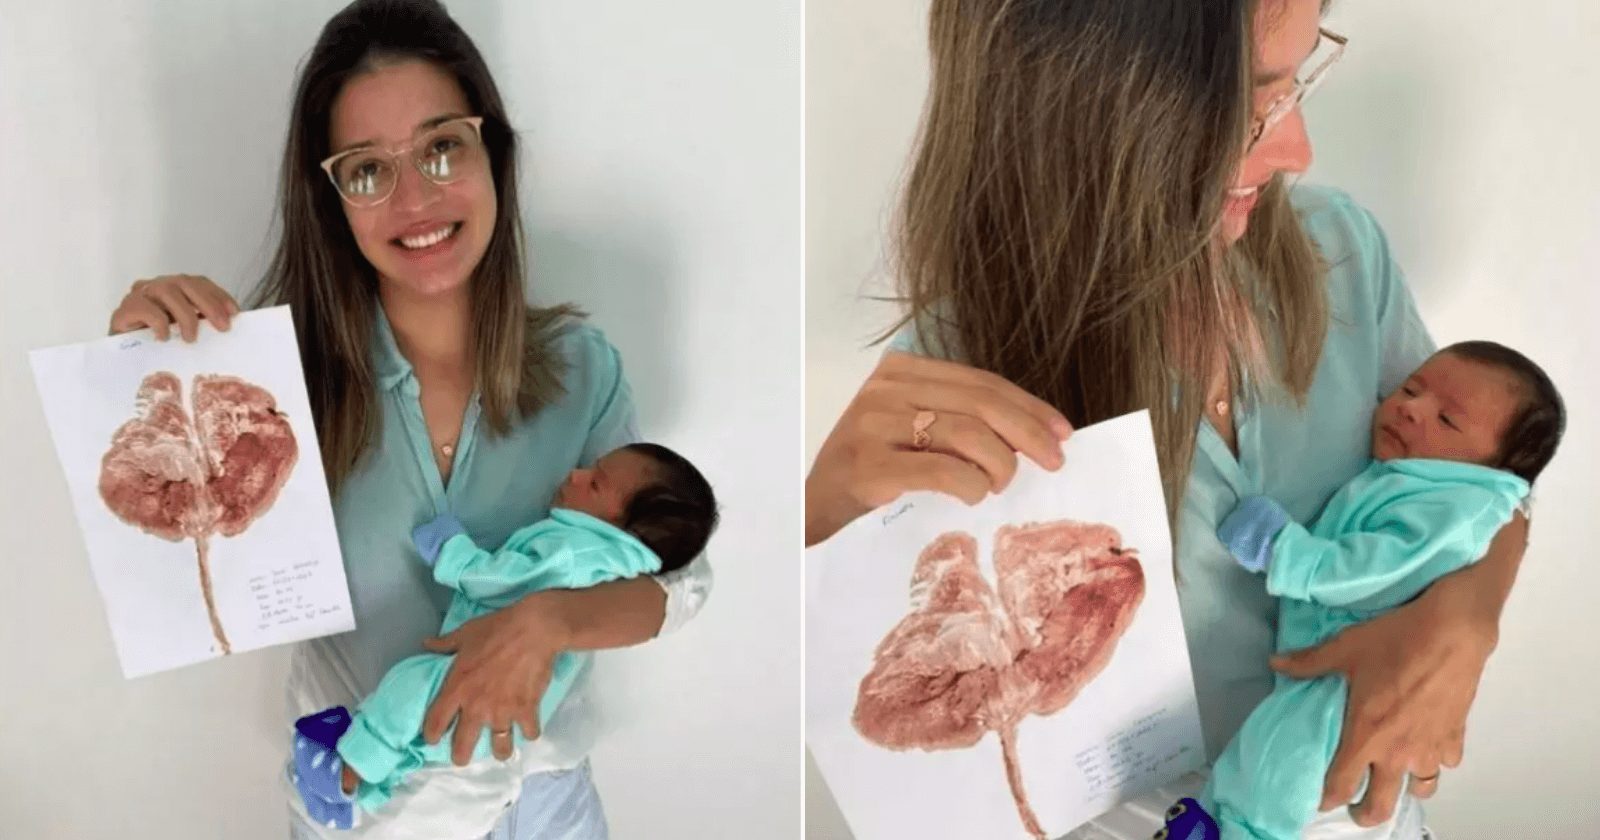 Enfermeira monta surpresinhas para mamães criando 'árvore da vida' depois do parto